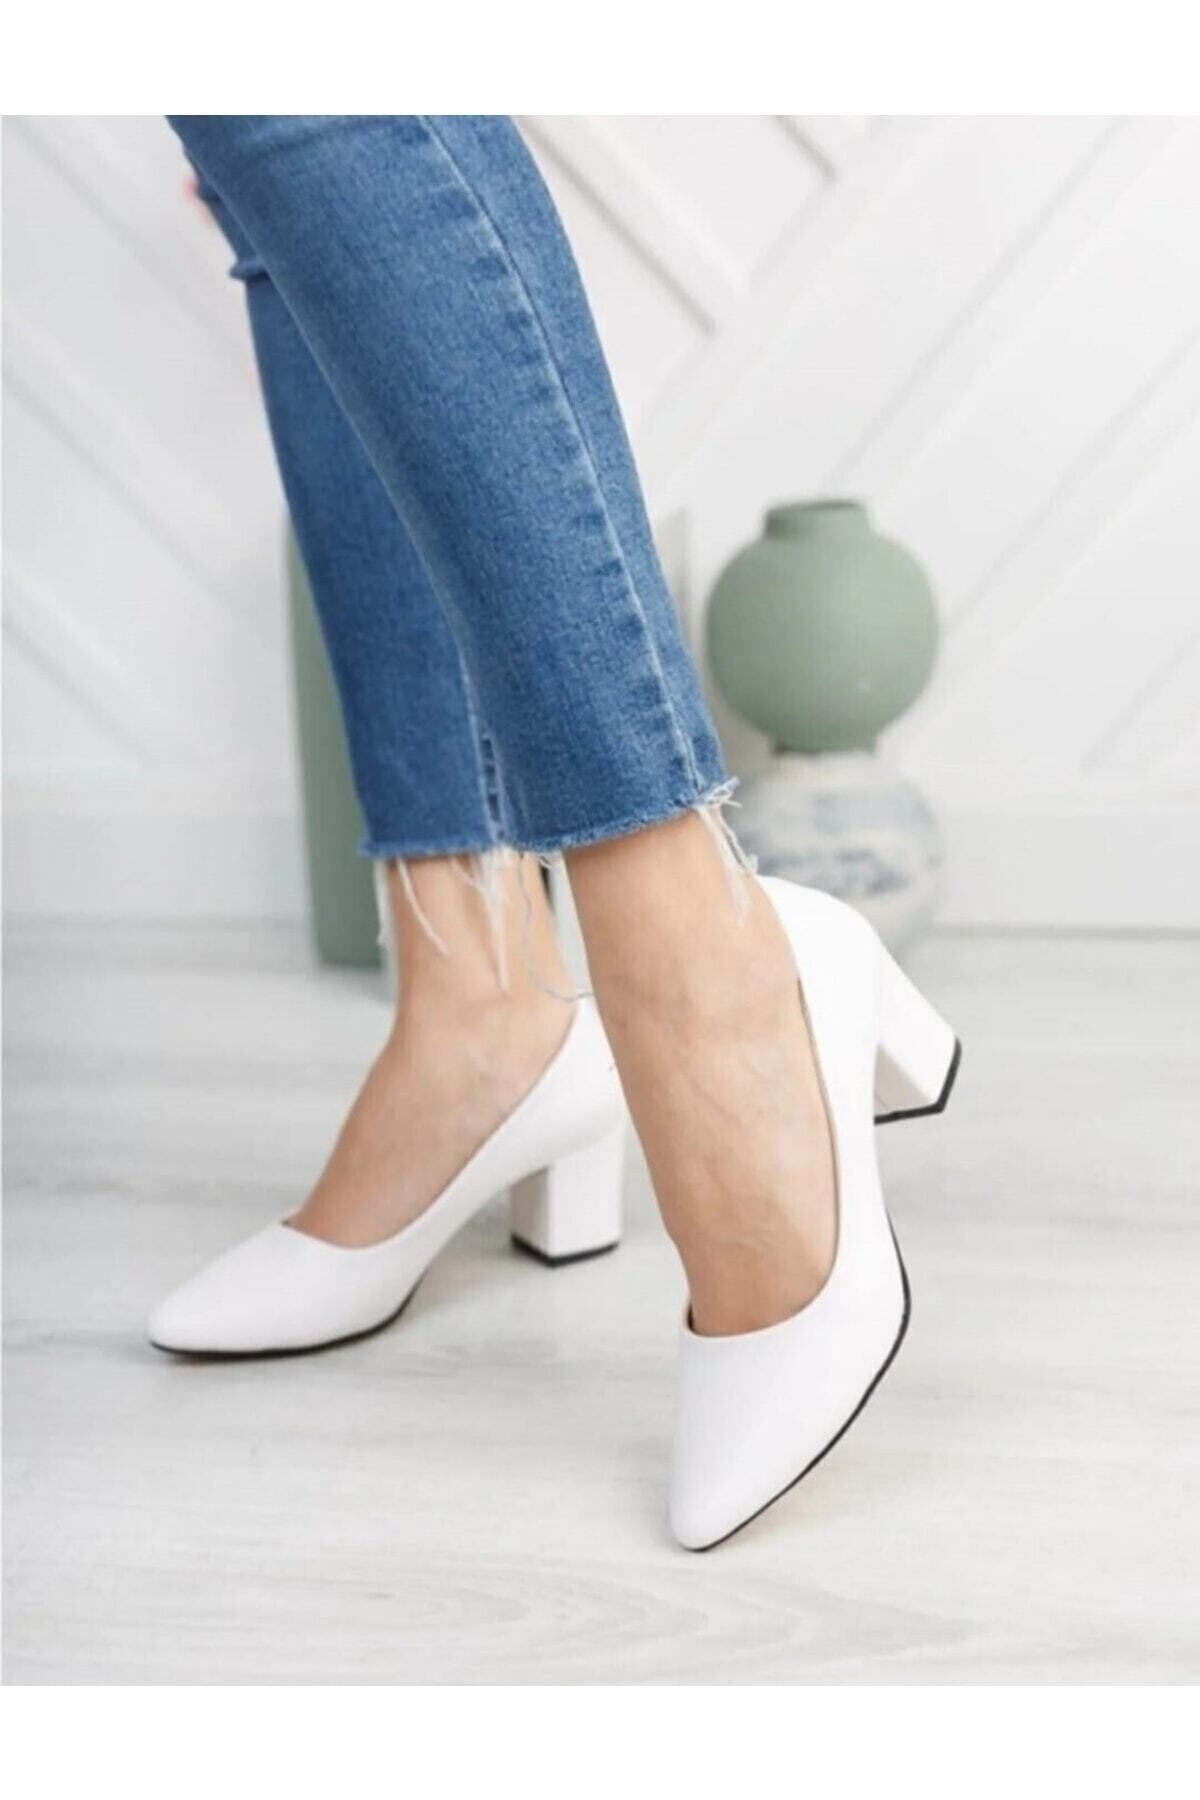 BAY ARMEDON Kadın Ayakkabı Beyaz Cilt Kısa Kalın Topuklu Ayakkabı Abiye Ayakkabı 5cm Klasik Ayakkabı